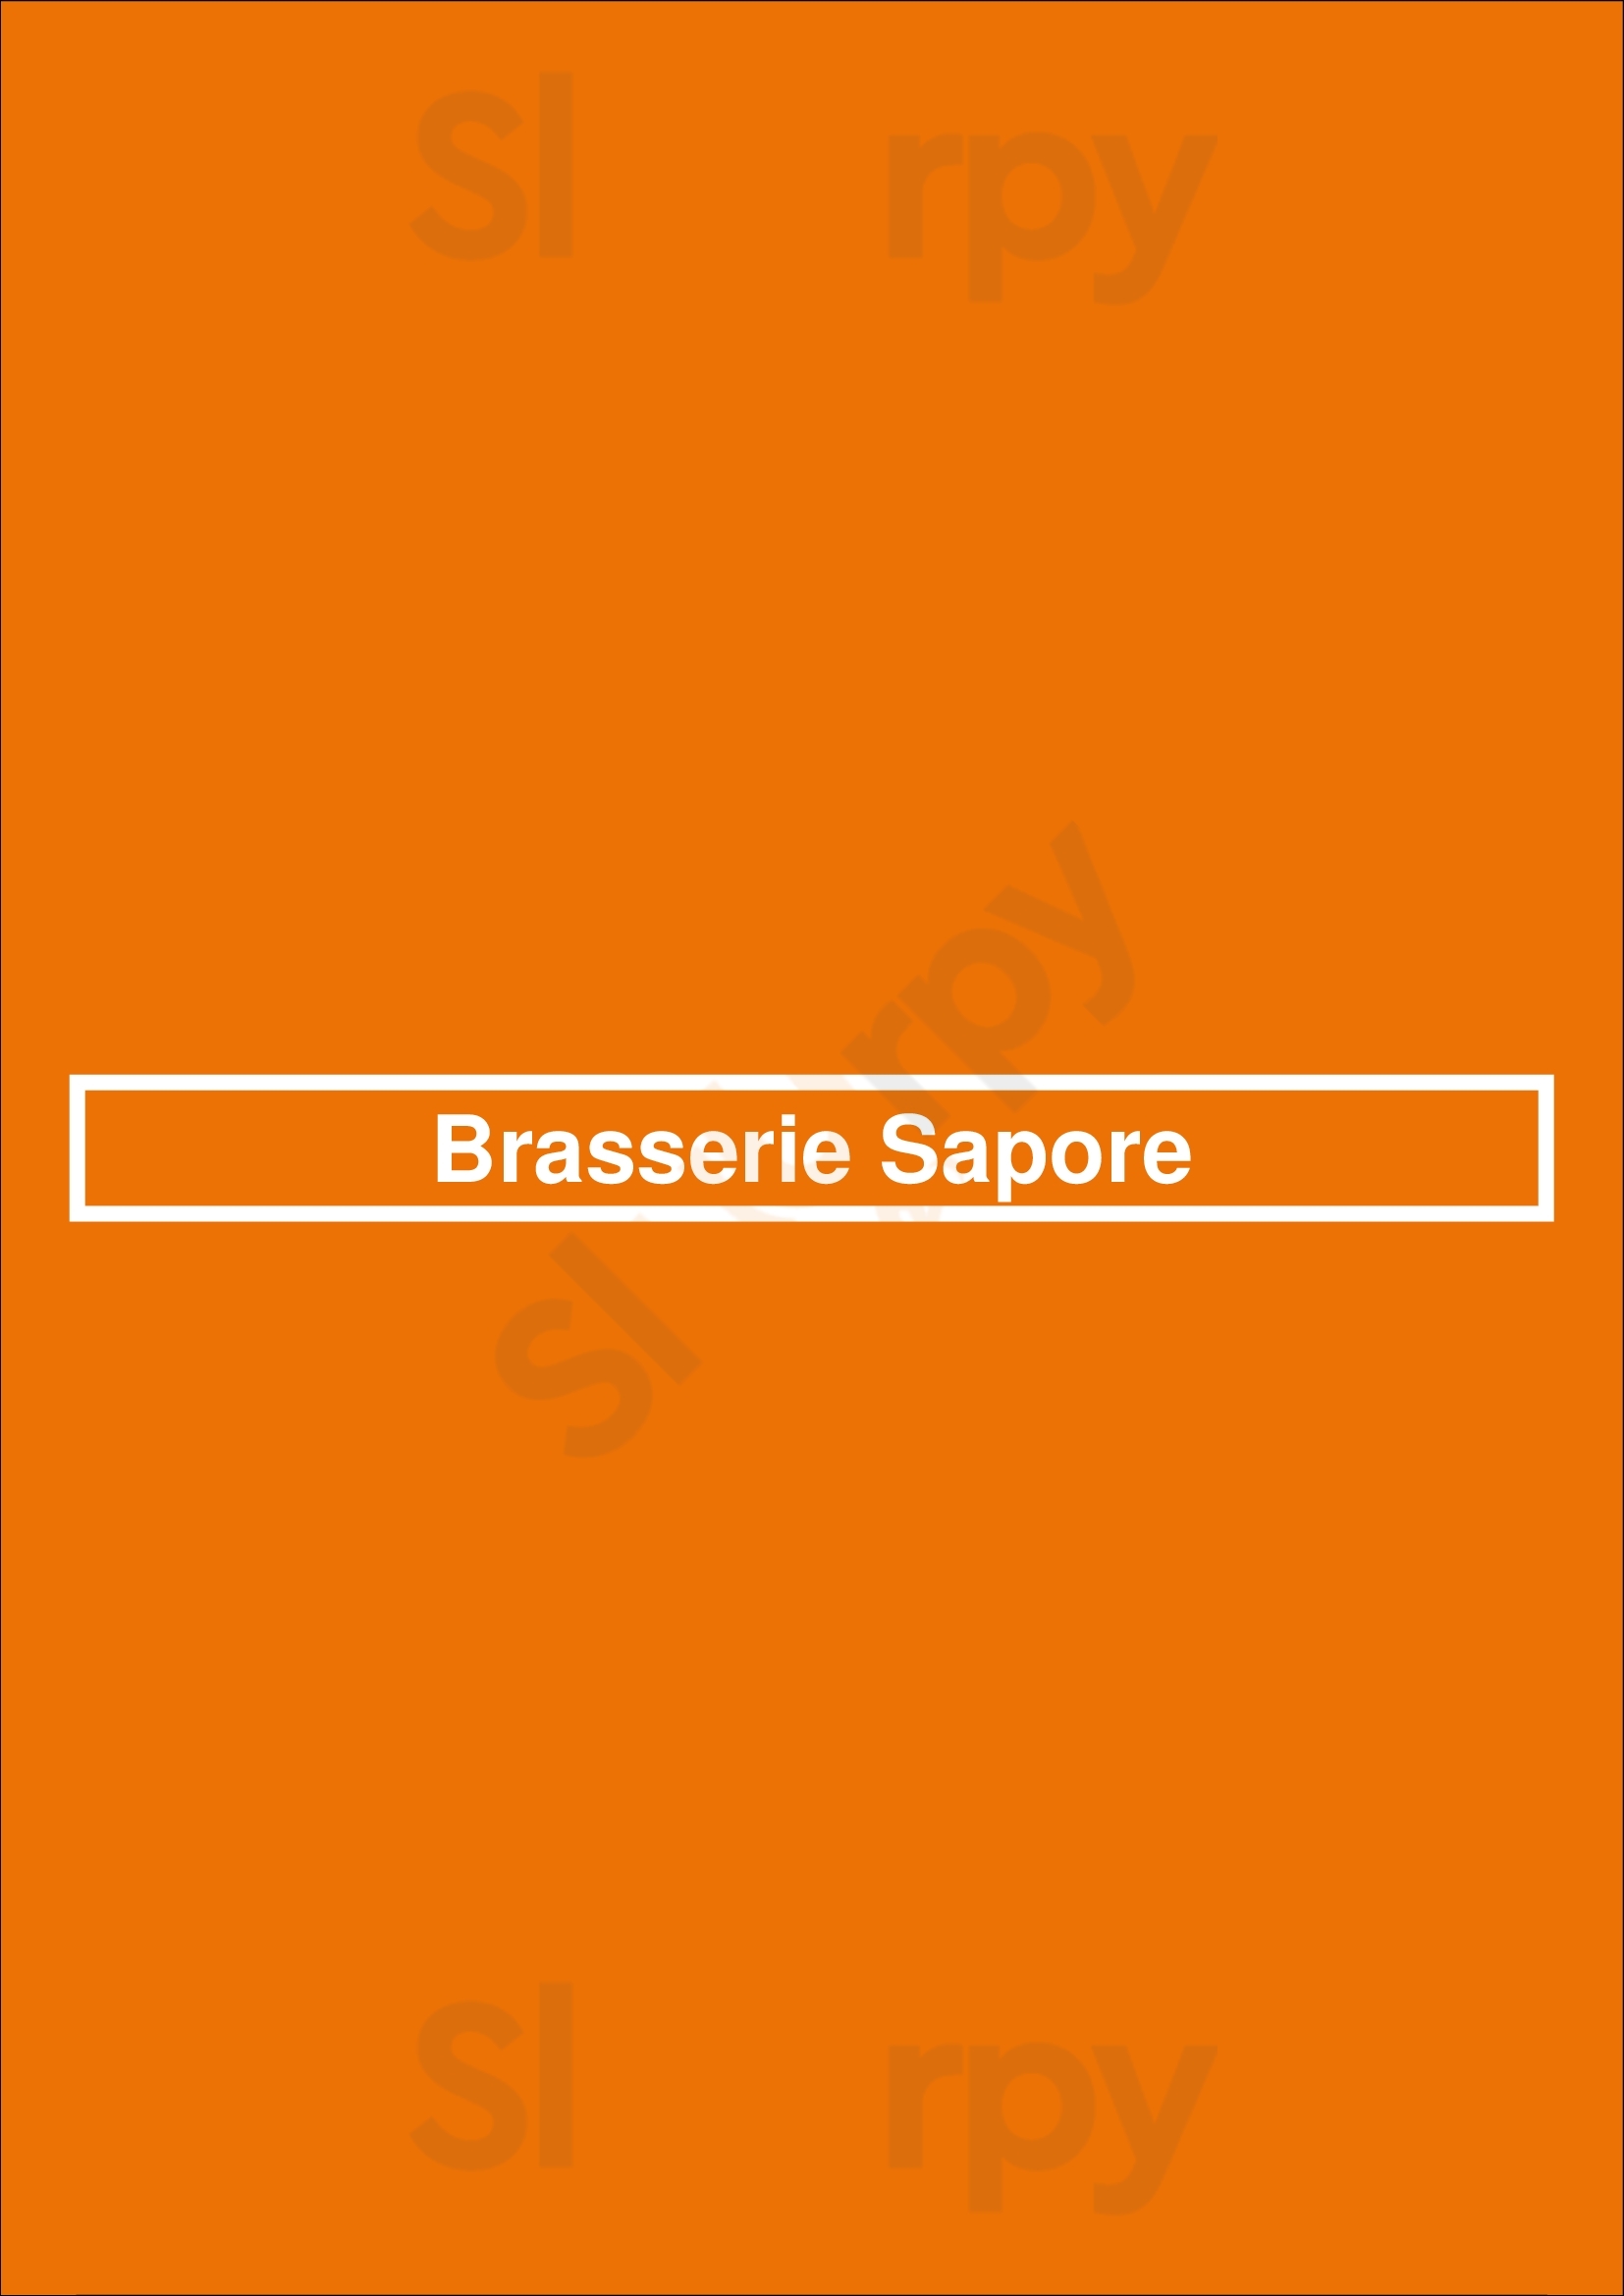 Brasserie Sapore Ekeren Menu - 1